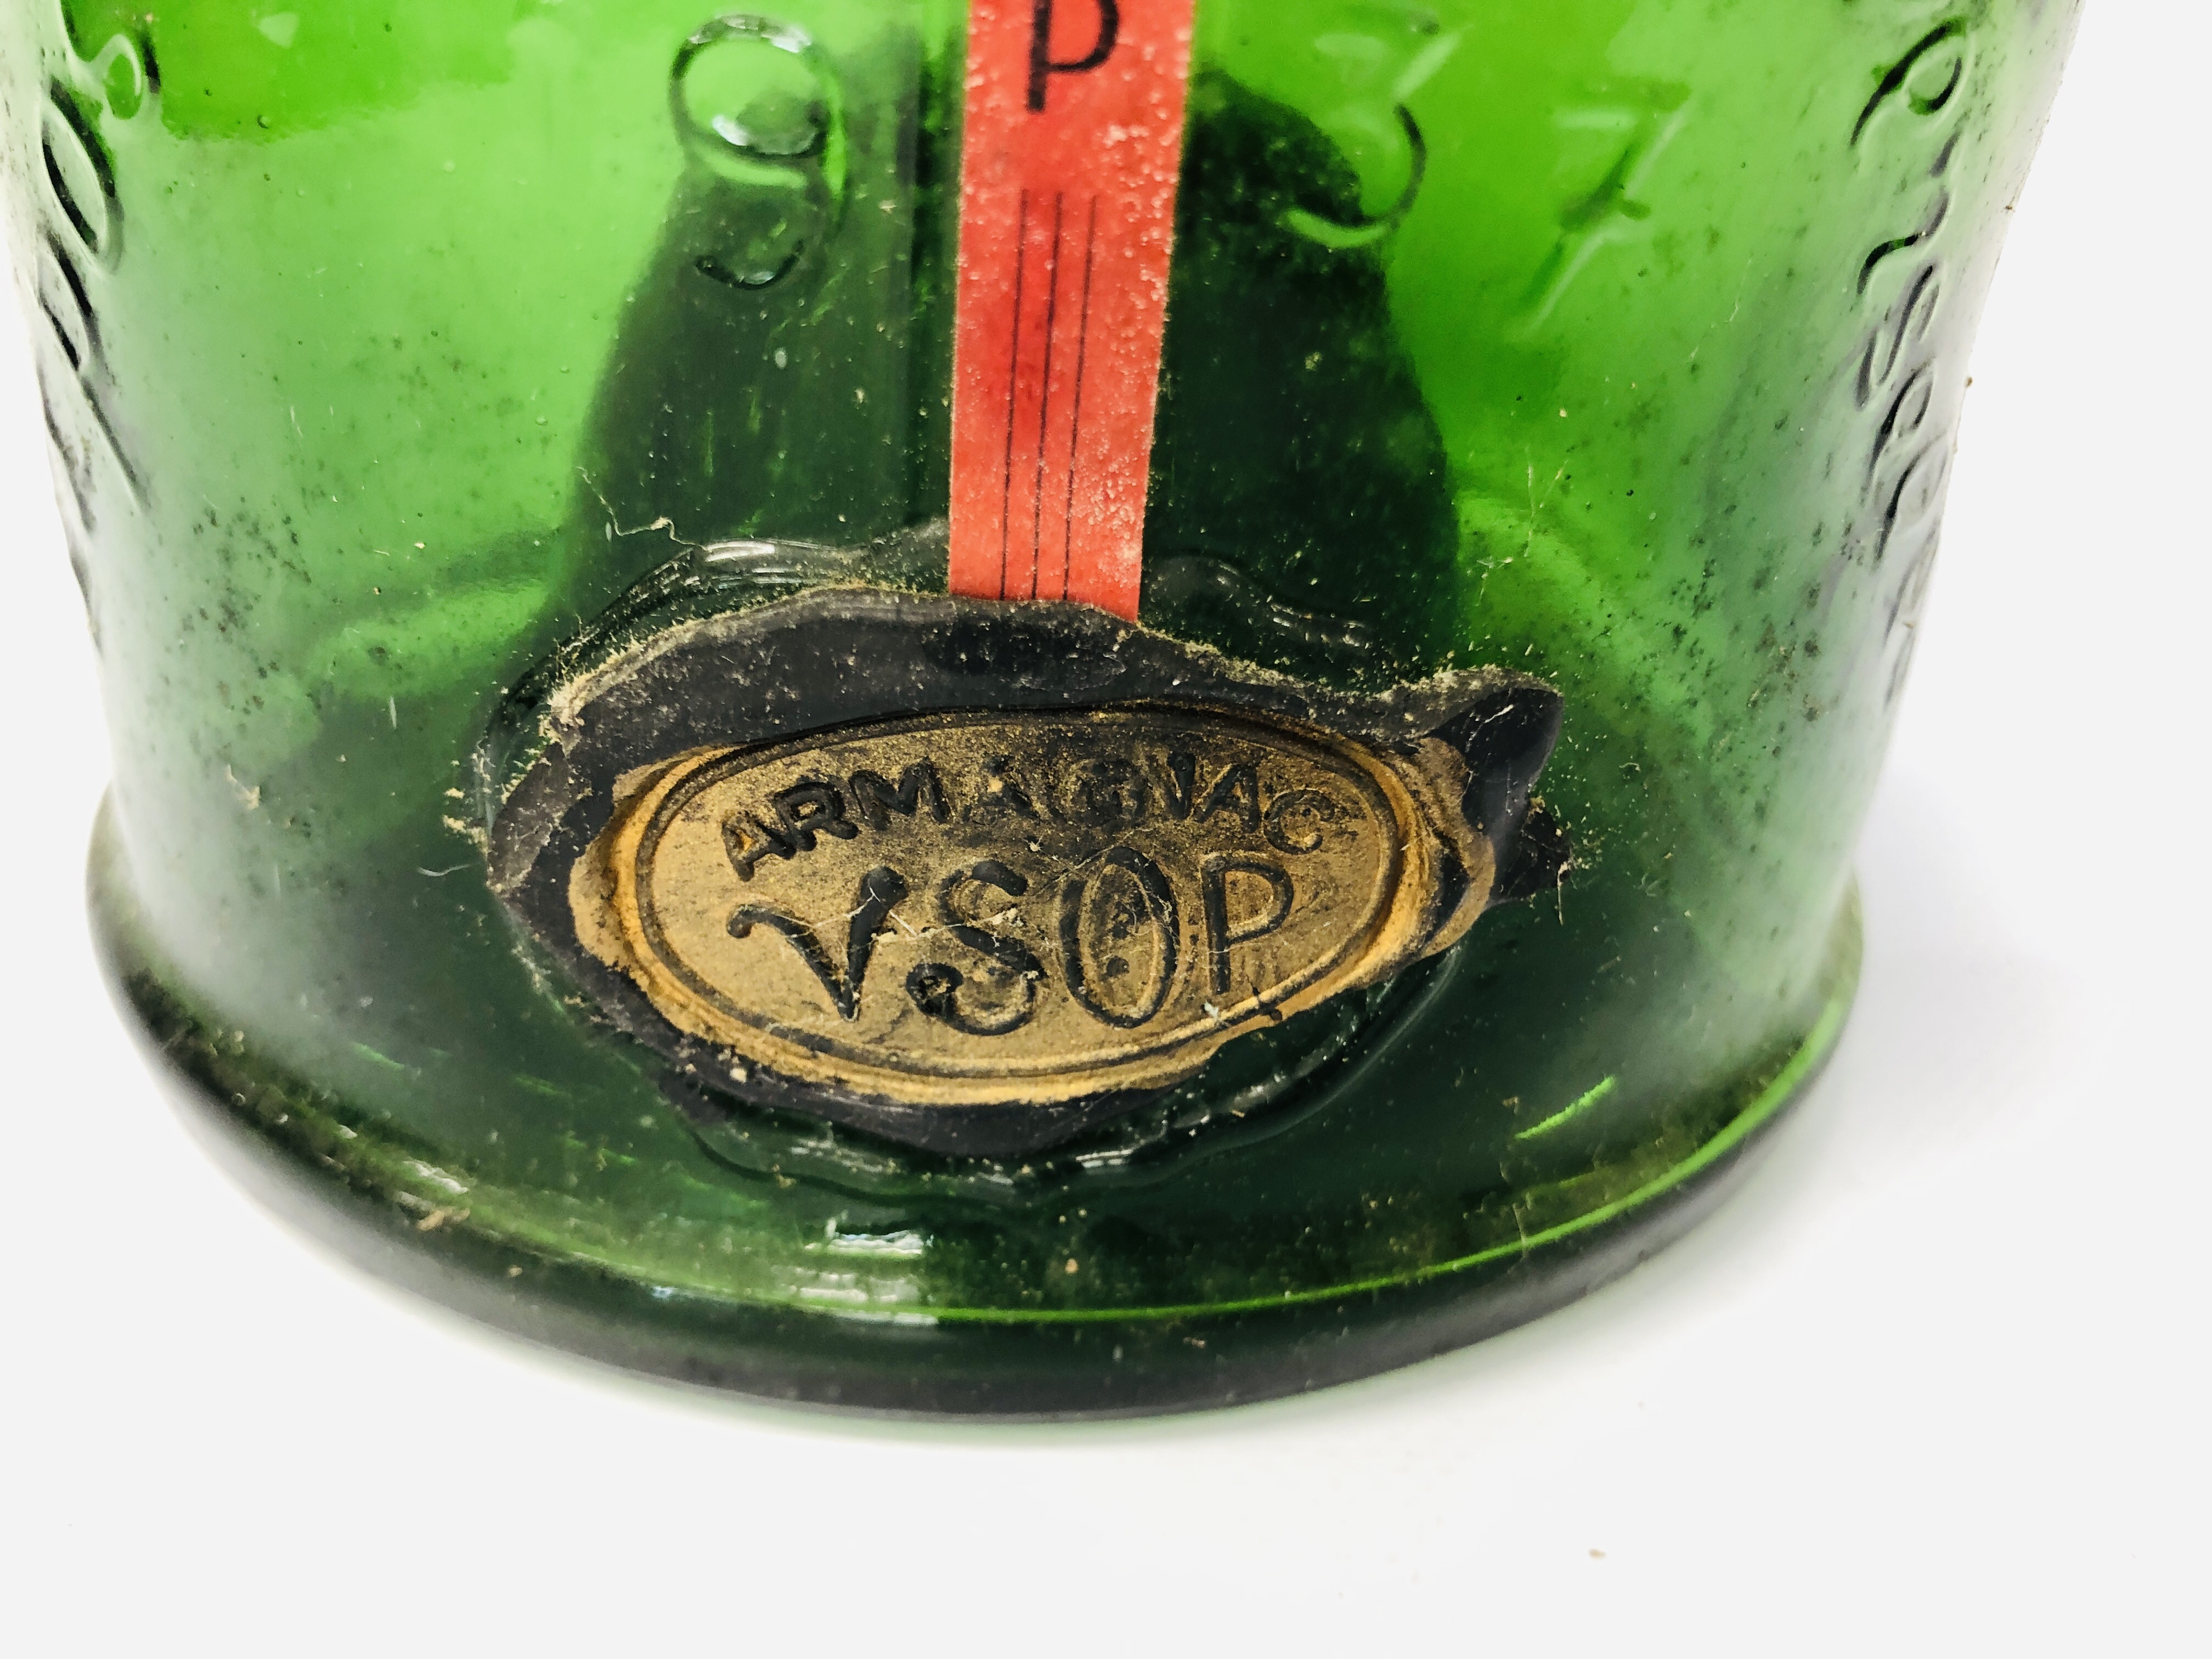 VINTAGE GREEN GLASS BOTTLE ST VIVANT ARMAGNAC 1937 (EMPTY) - Image 2 of 6